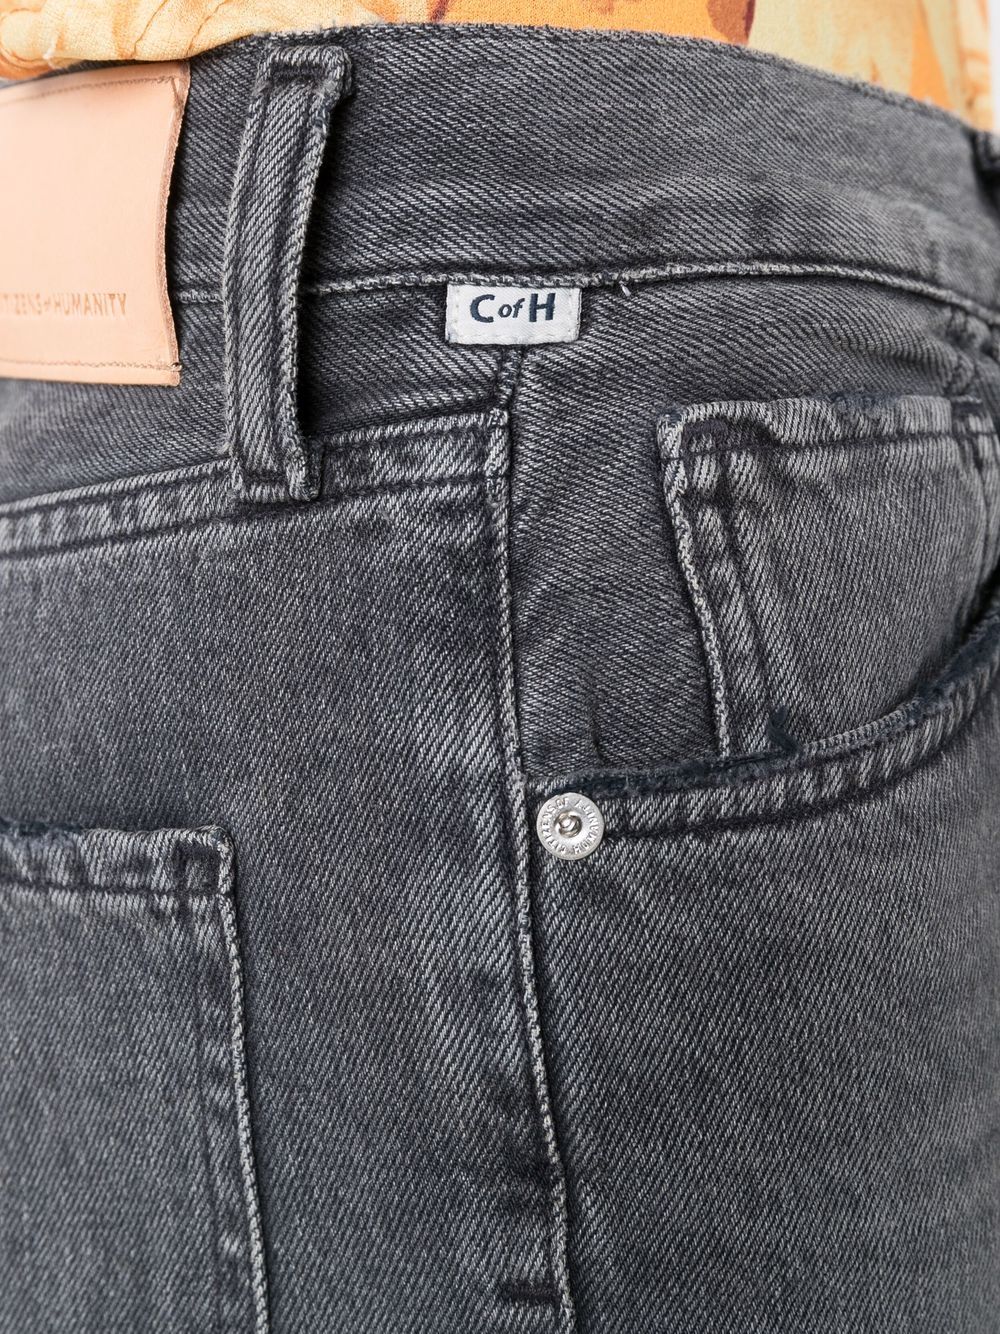 фото Citizens of humanity узкие джинсы daphne средней посадки